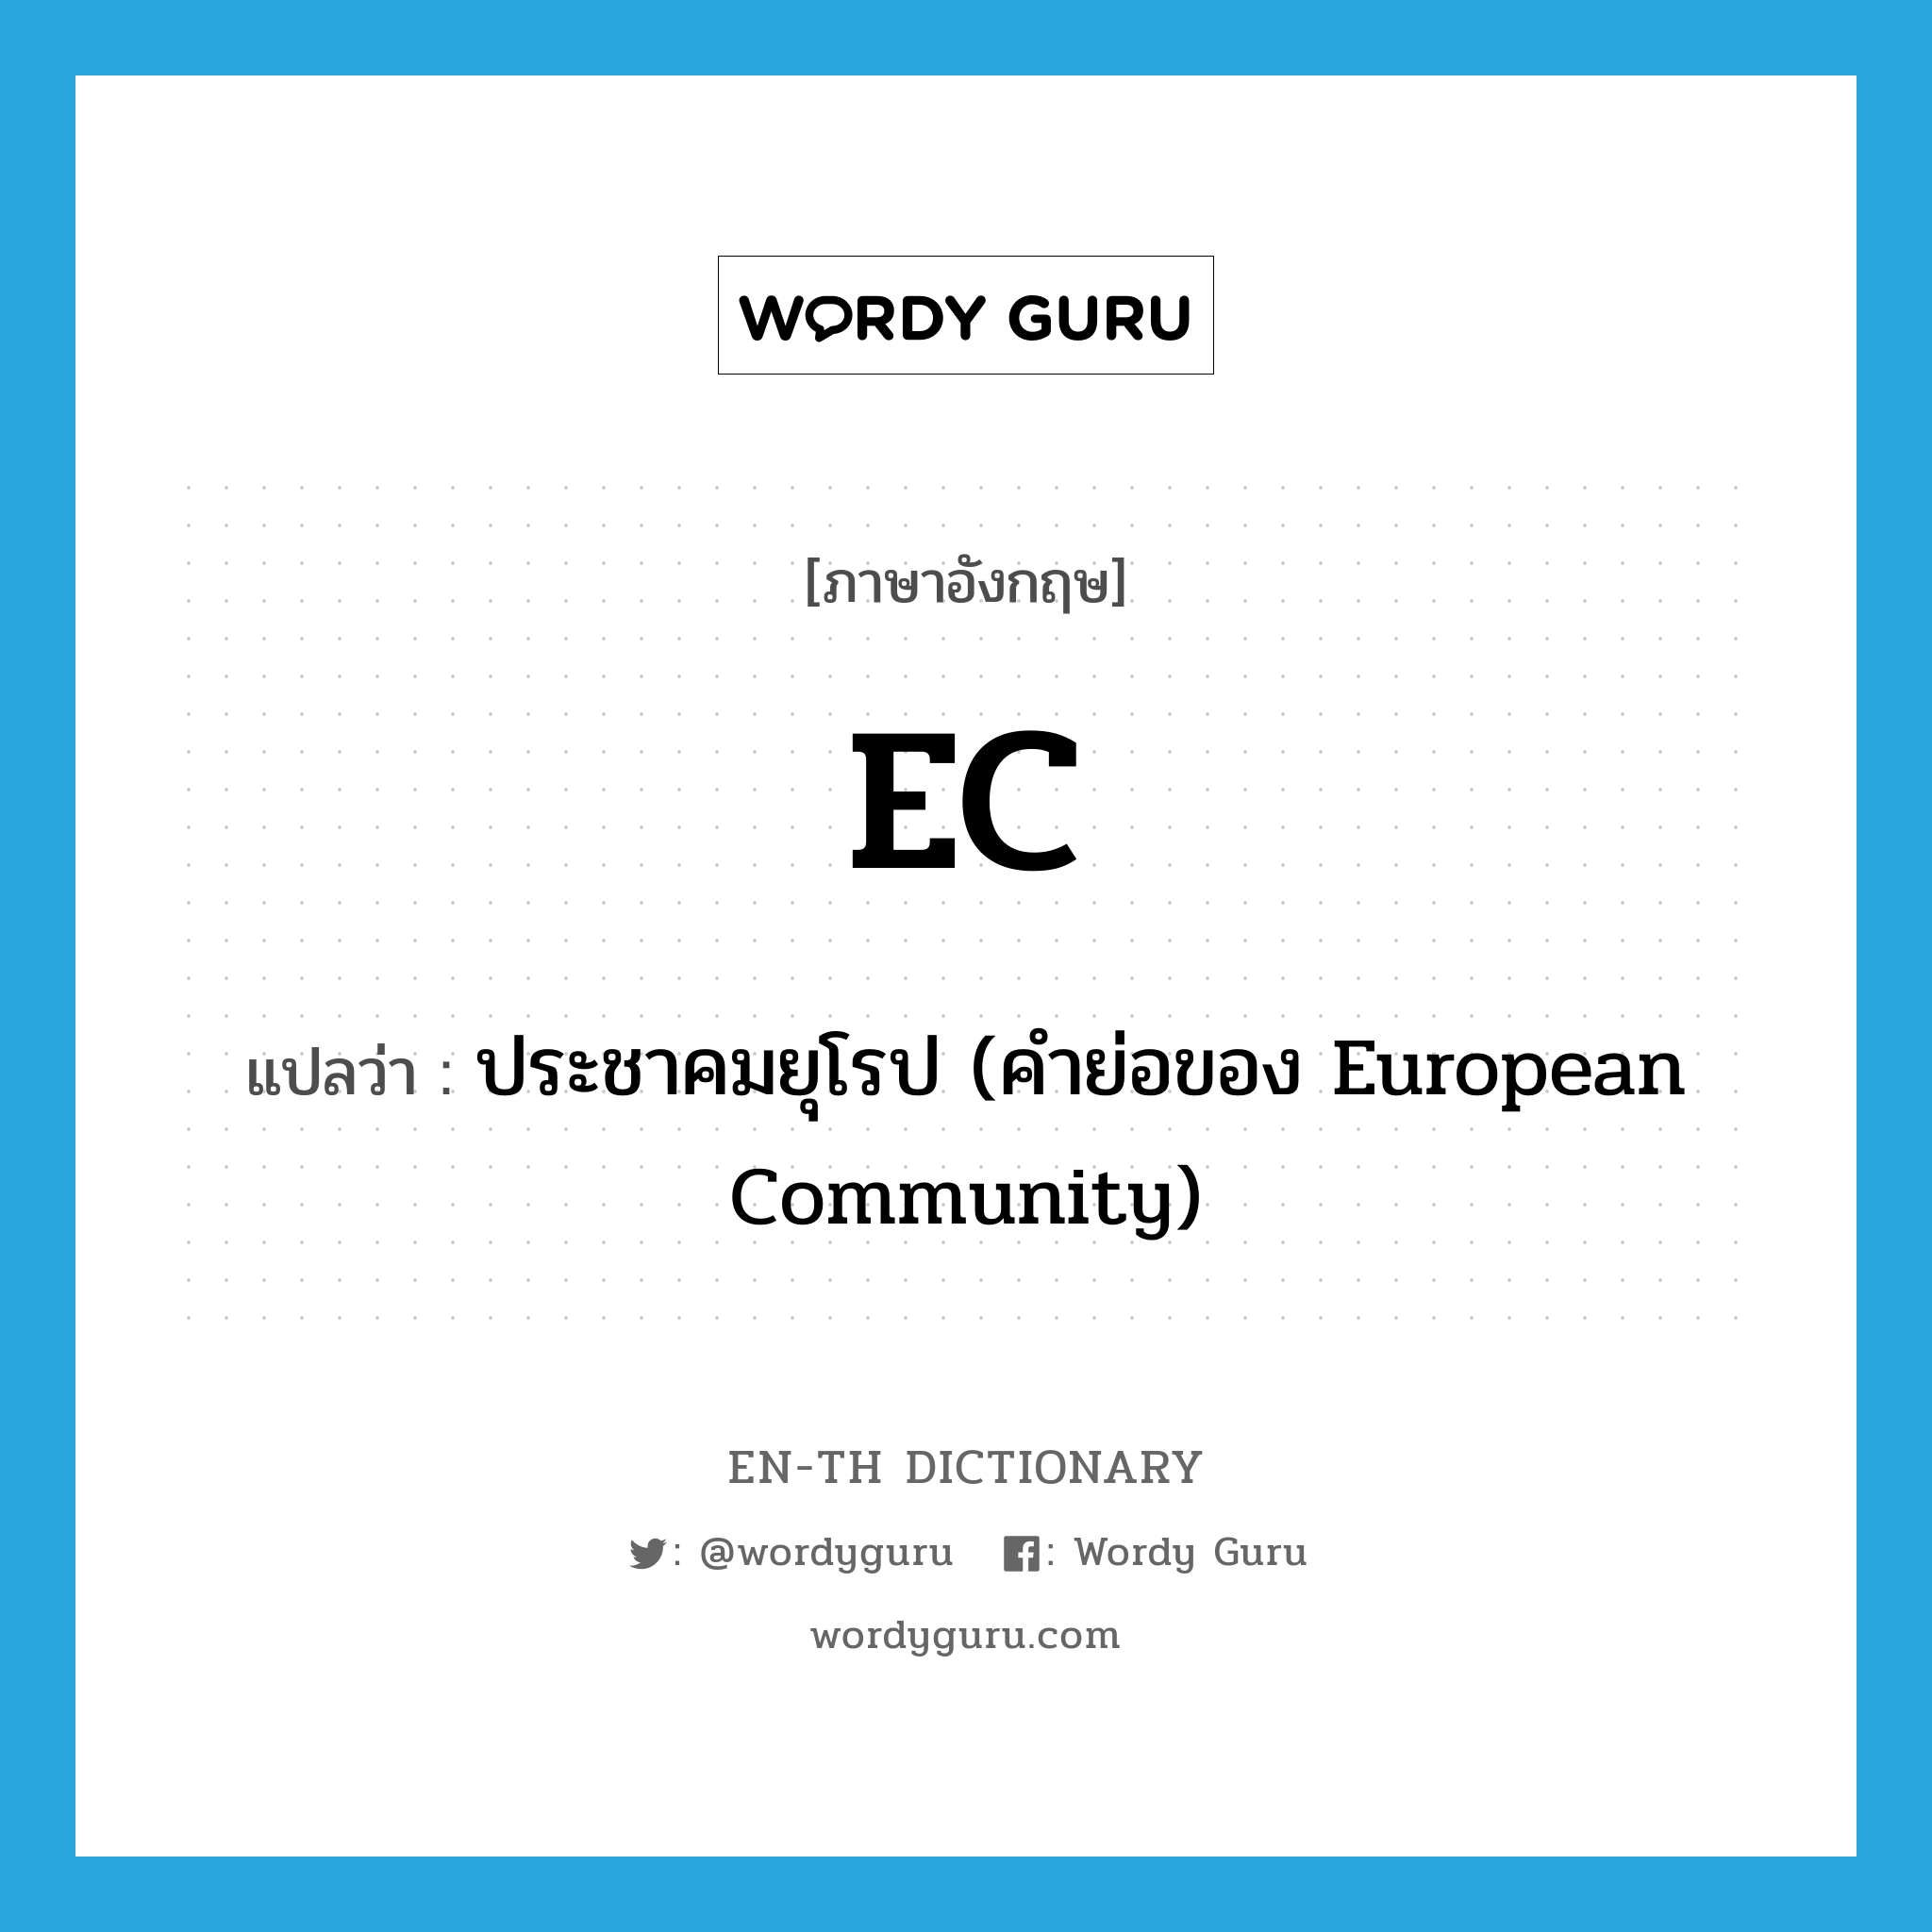 ประชาคมยุโรป (คำย่อของ European Community) ภาษาอังกฤษ?, คำศัพท์ภาษาอังกฤษ ประชาคมยุโรป (คำย่อของ European Community) แปลว่า EC ประเภท ABBR หมวด ABBR